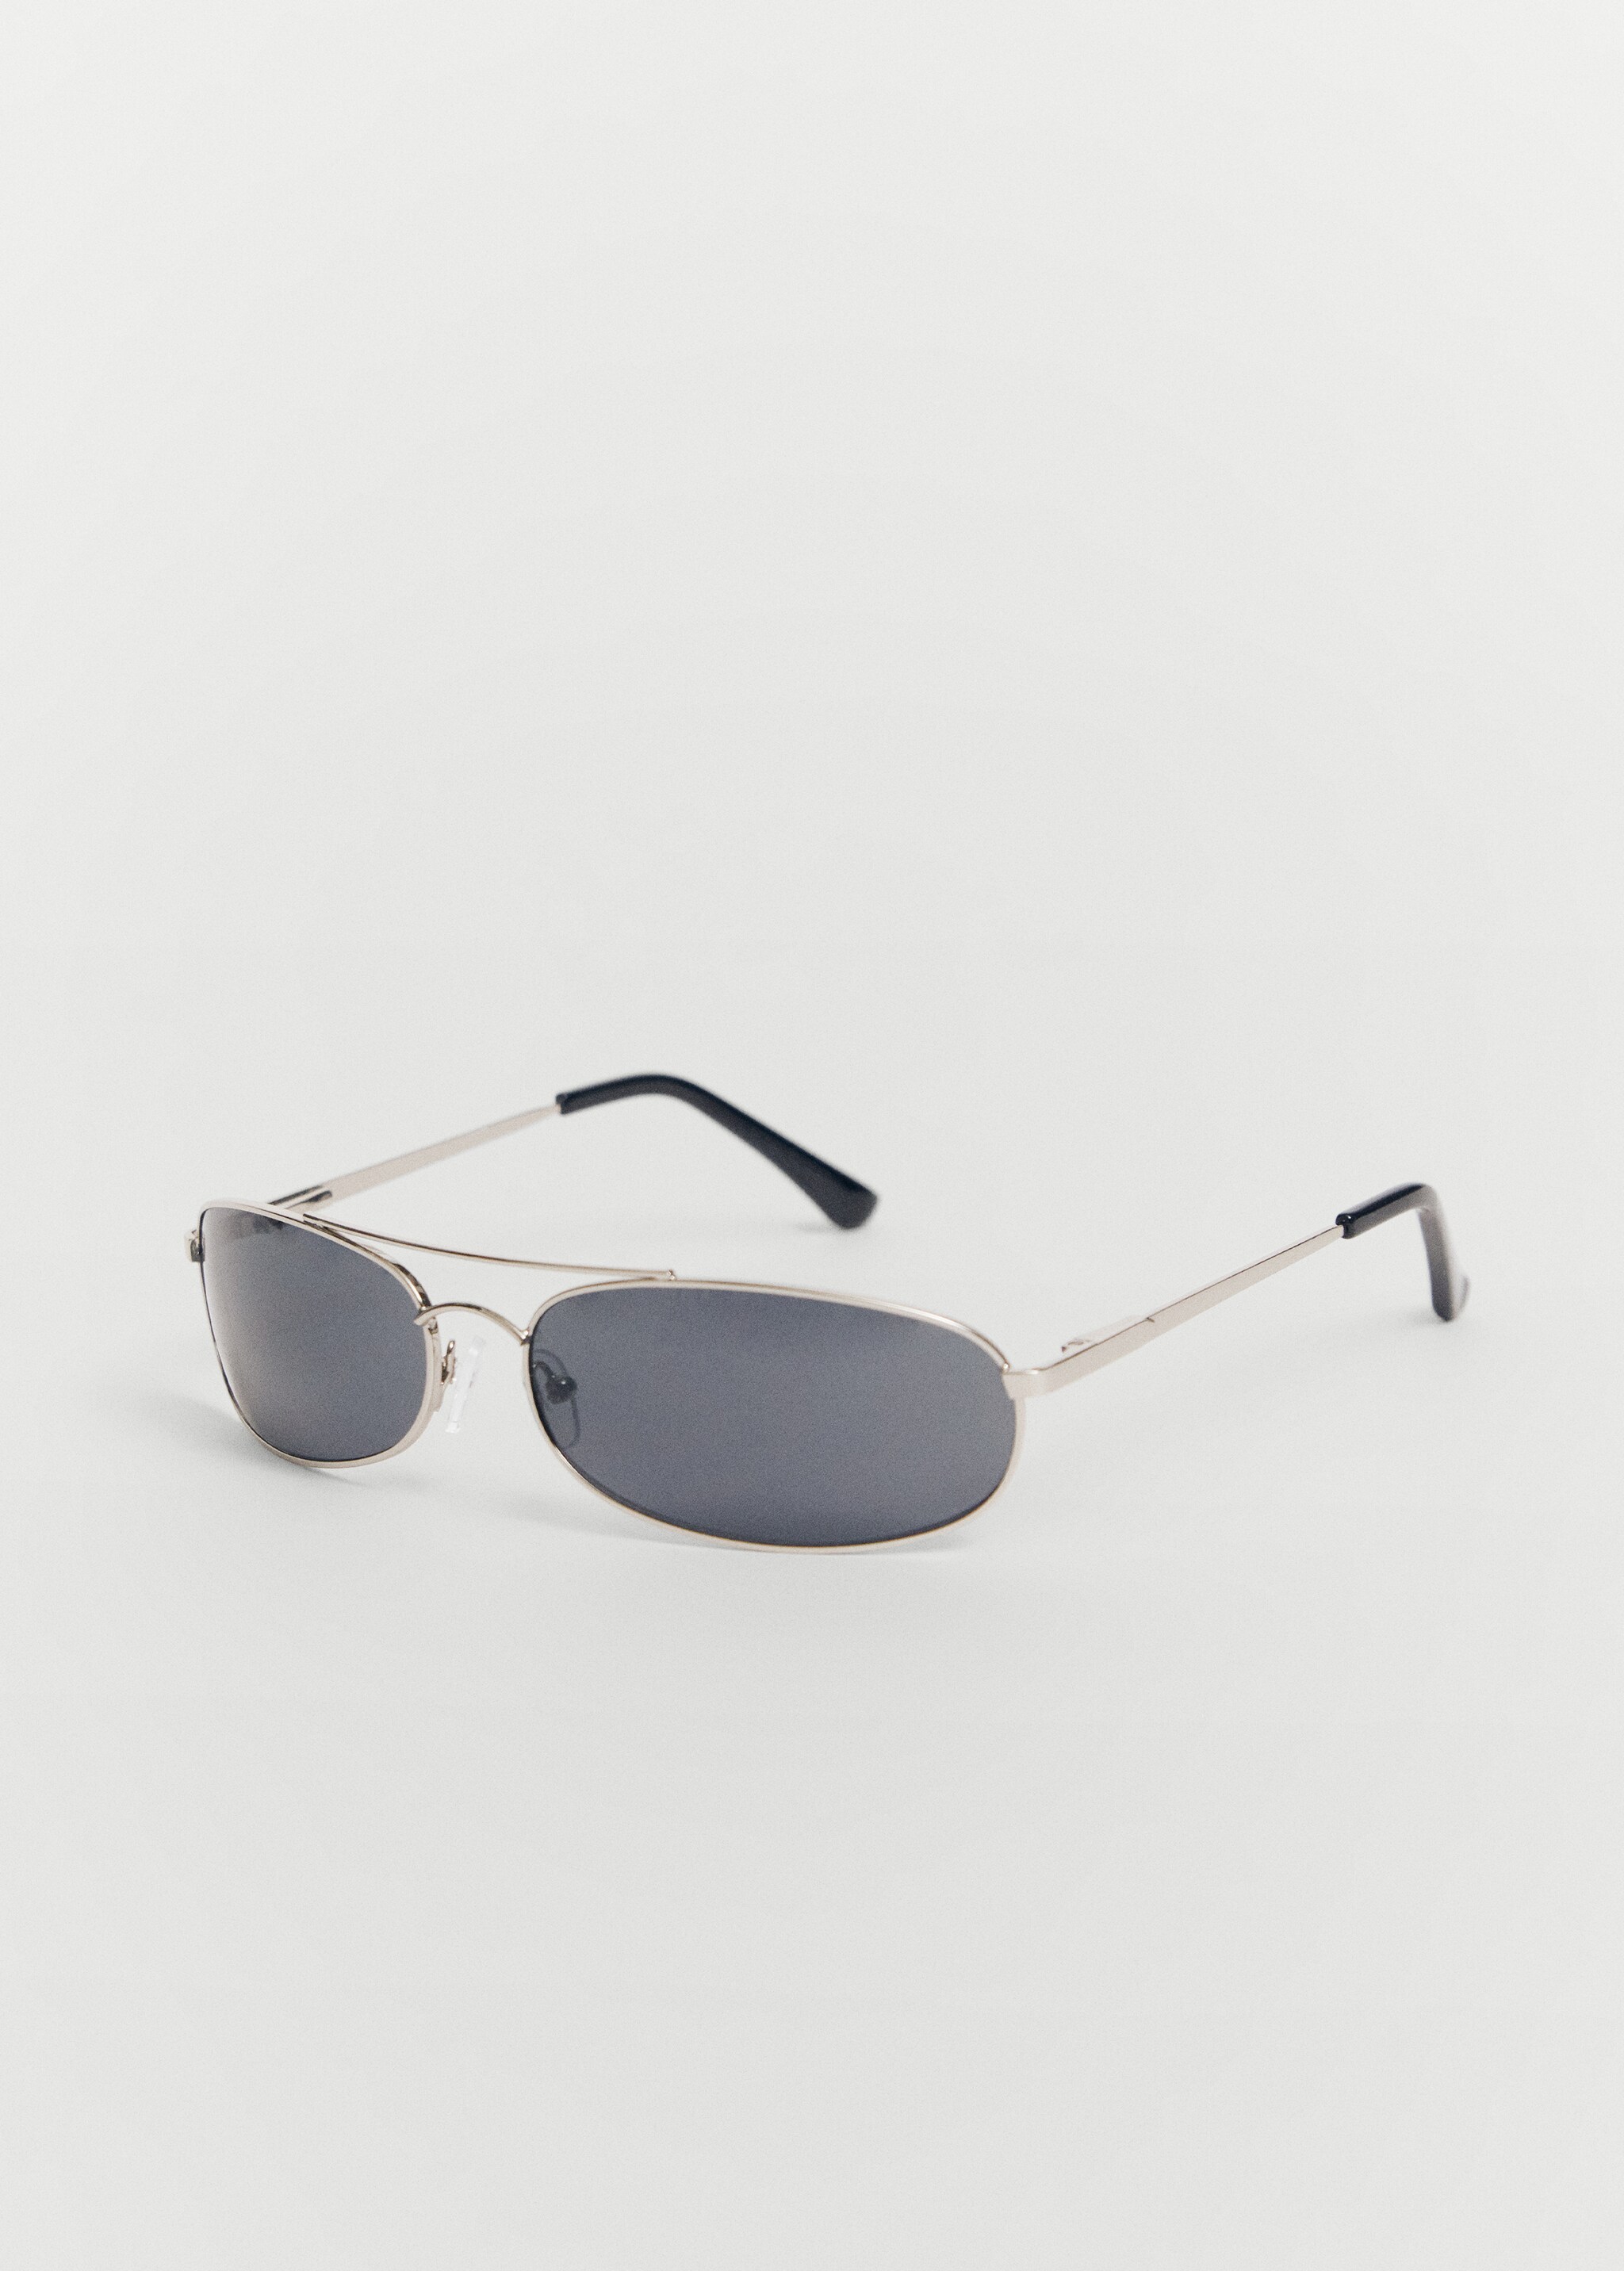 Солнцезащитные очки в металлической оправе - Средний план